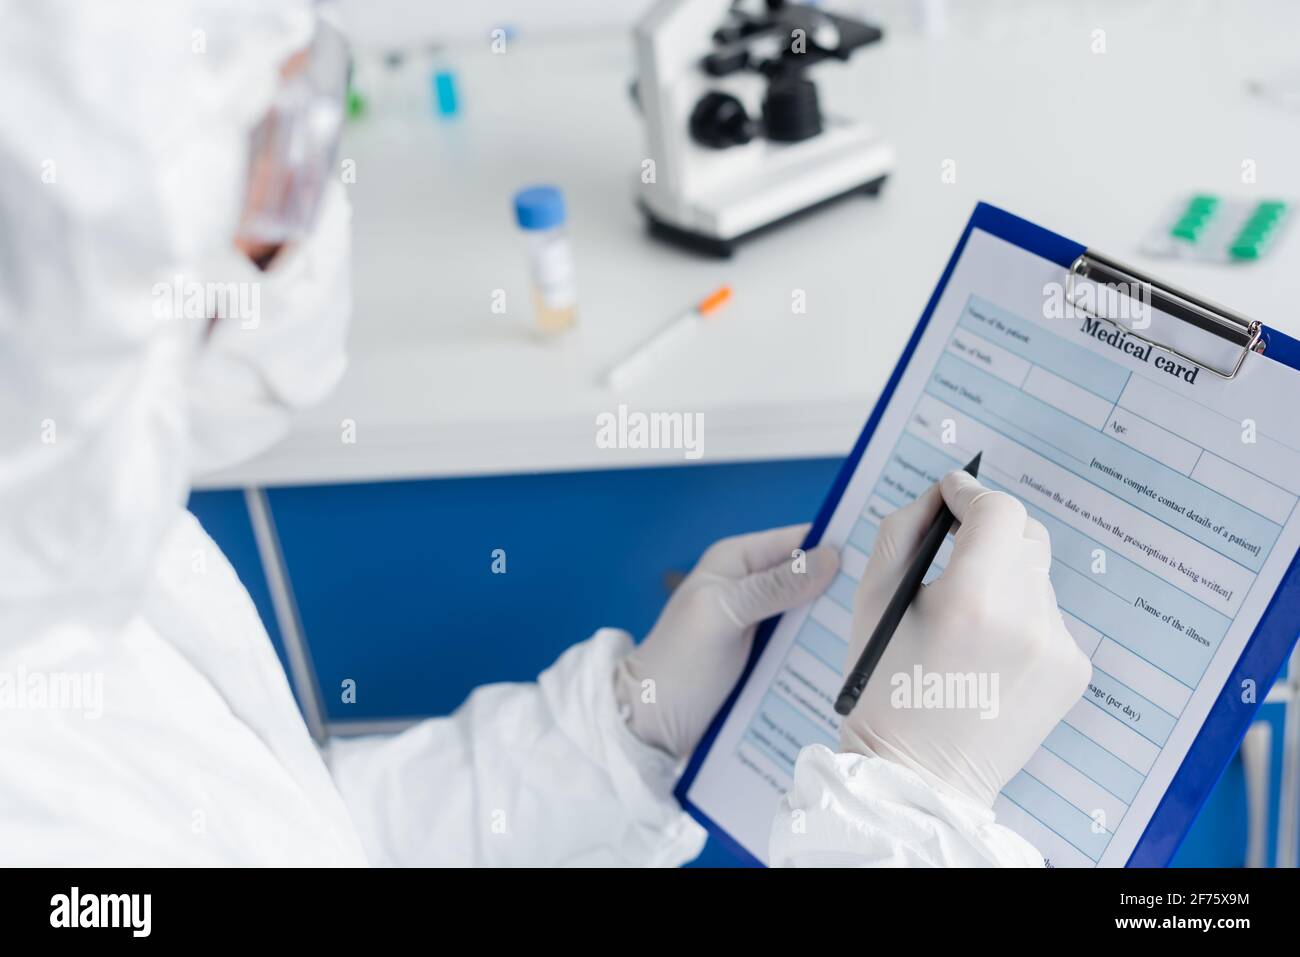 Medizinische Karte und Stift in den Händen des Wissenschaftlers in Schutz Uniform auf verschwommenem Vordergrund Stockfoto